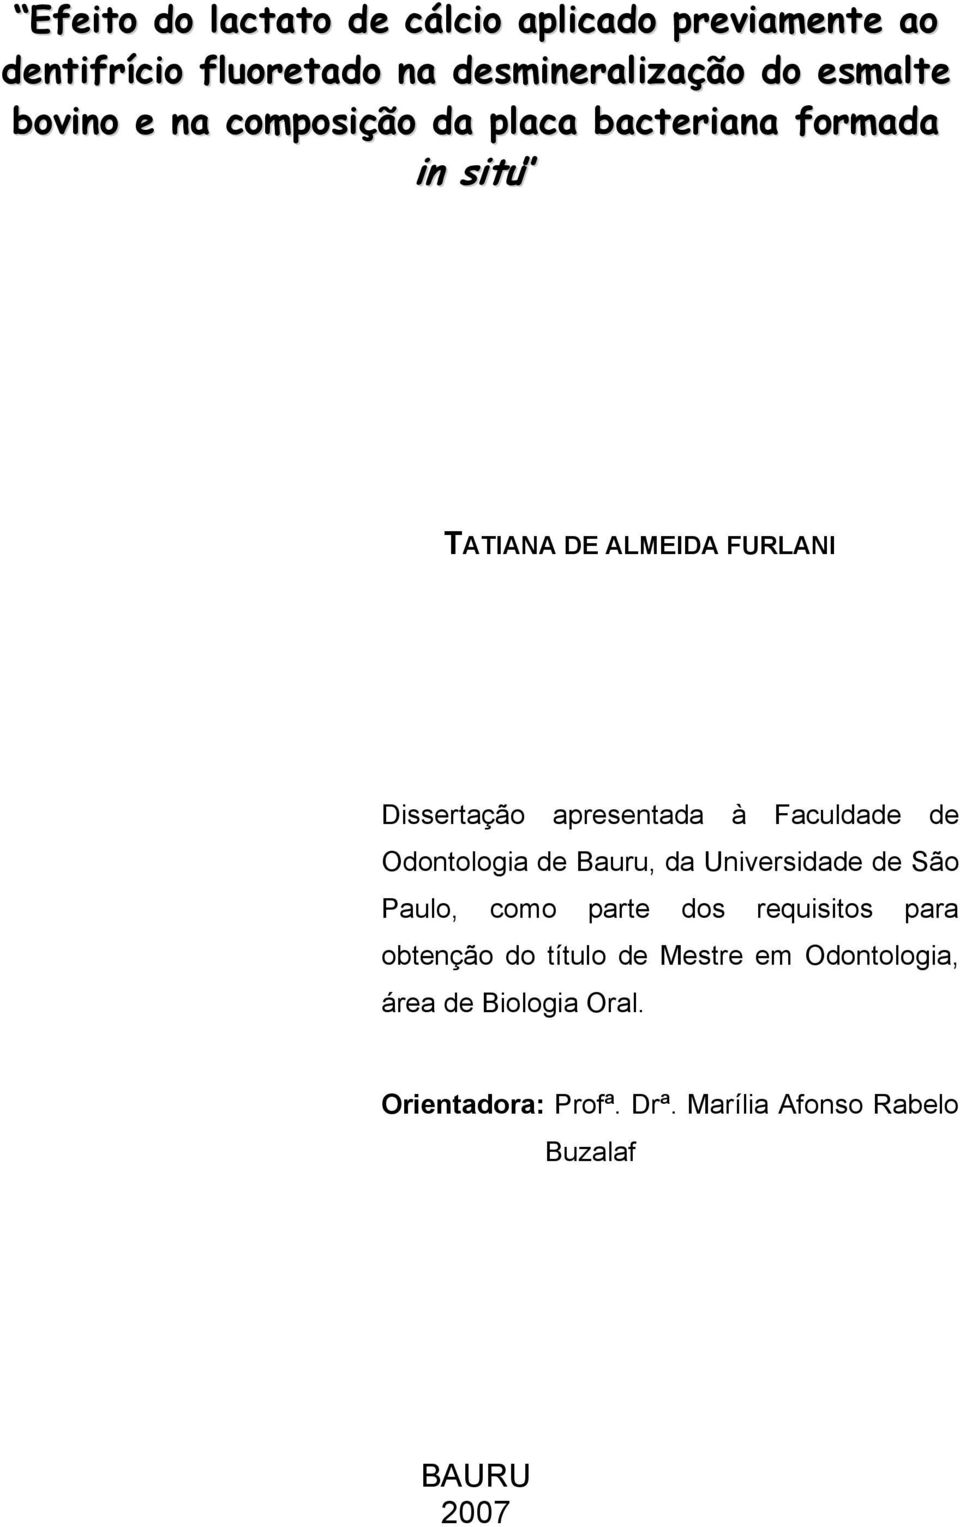 Faculdade de Odontologia de Bauru, da Universidade de São Paulo, como parte dos requisitos para obtenção do